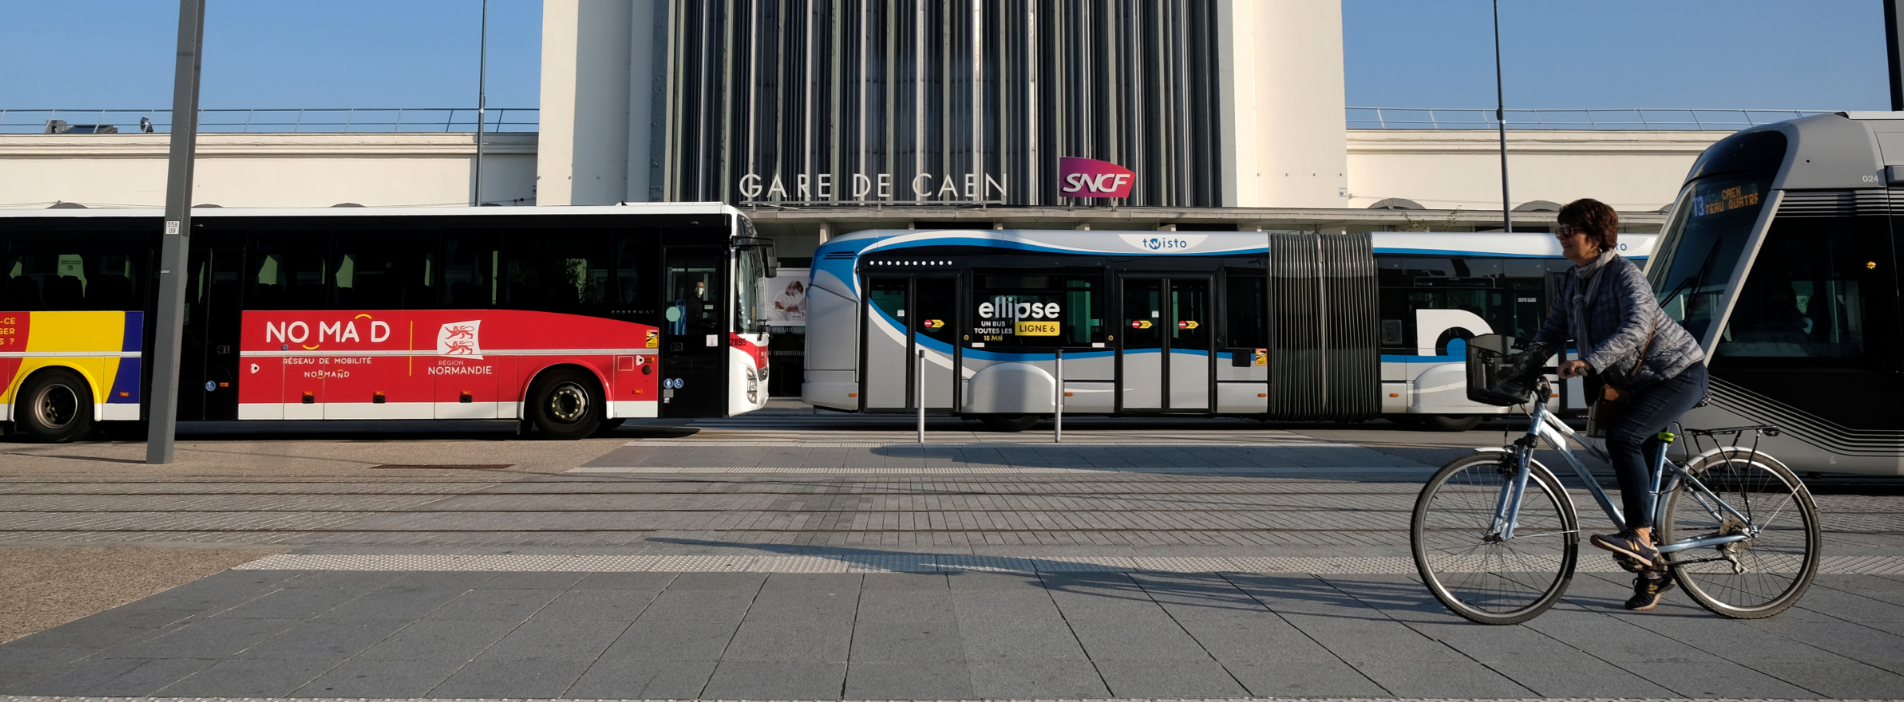 image de la gare de Cean avec diverses modes de transports